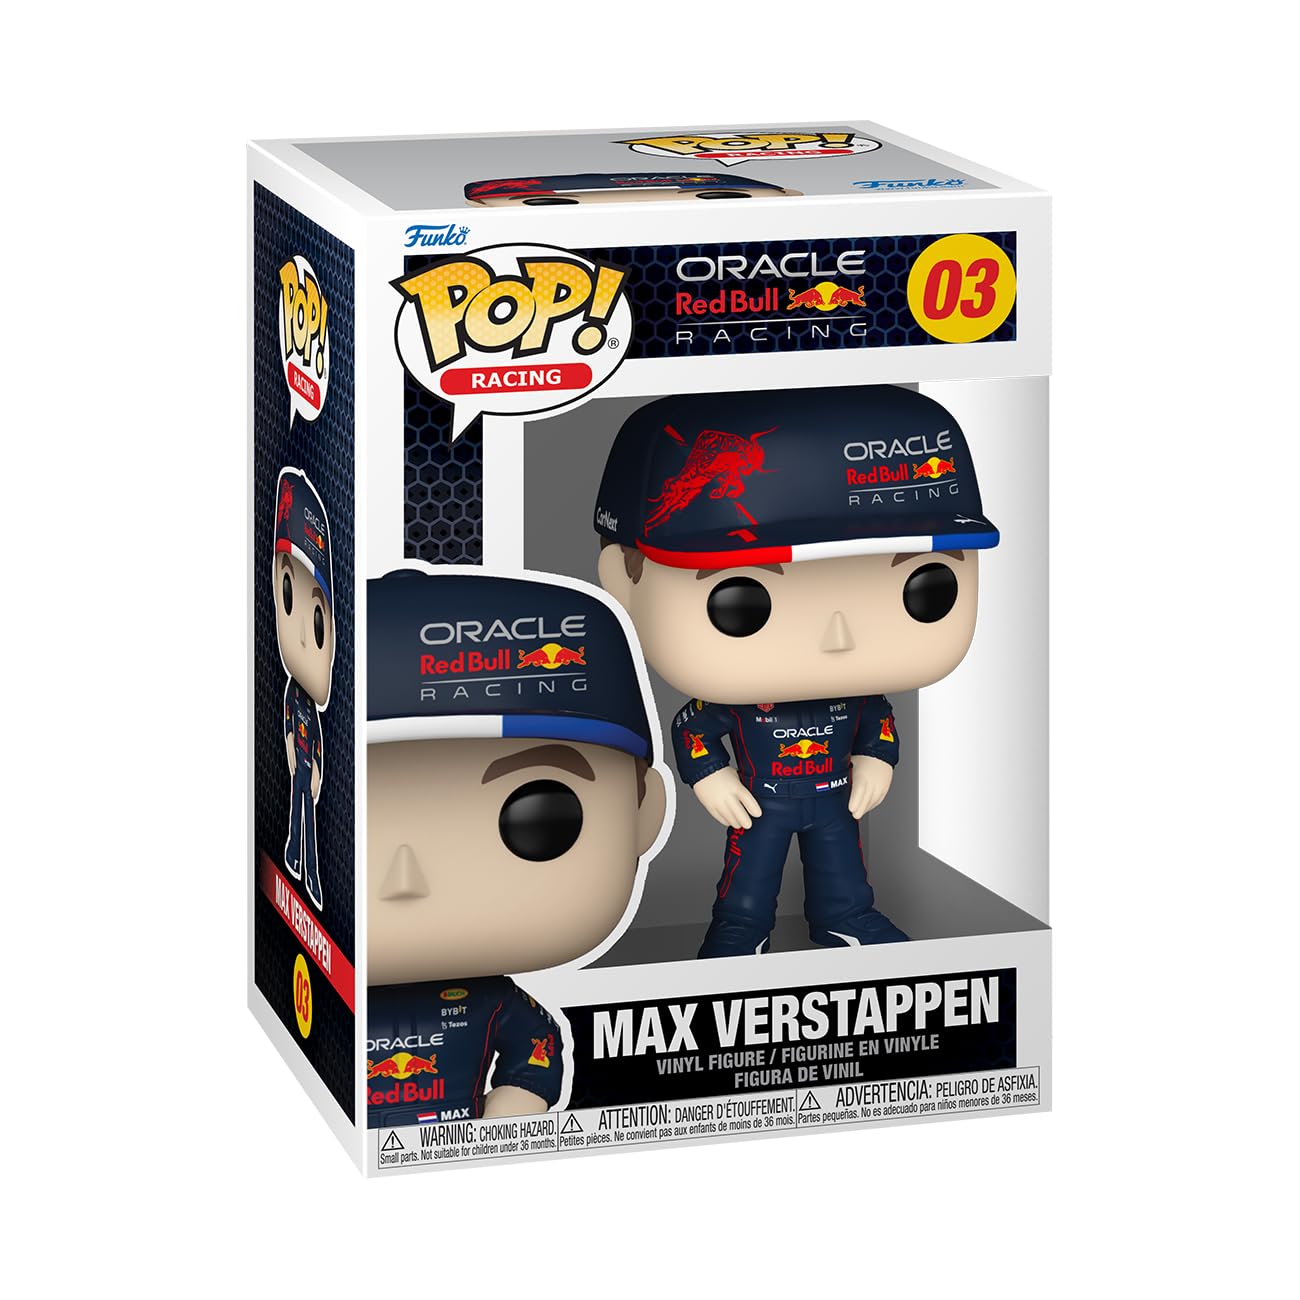 Pop! Max Verstappen 03